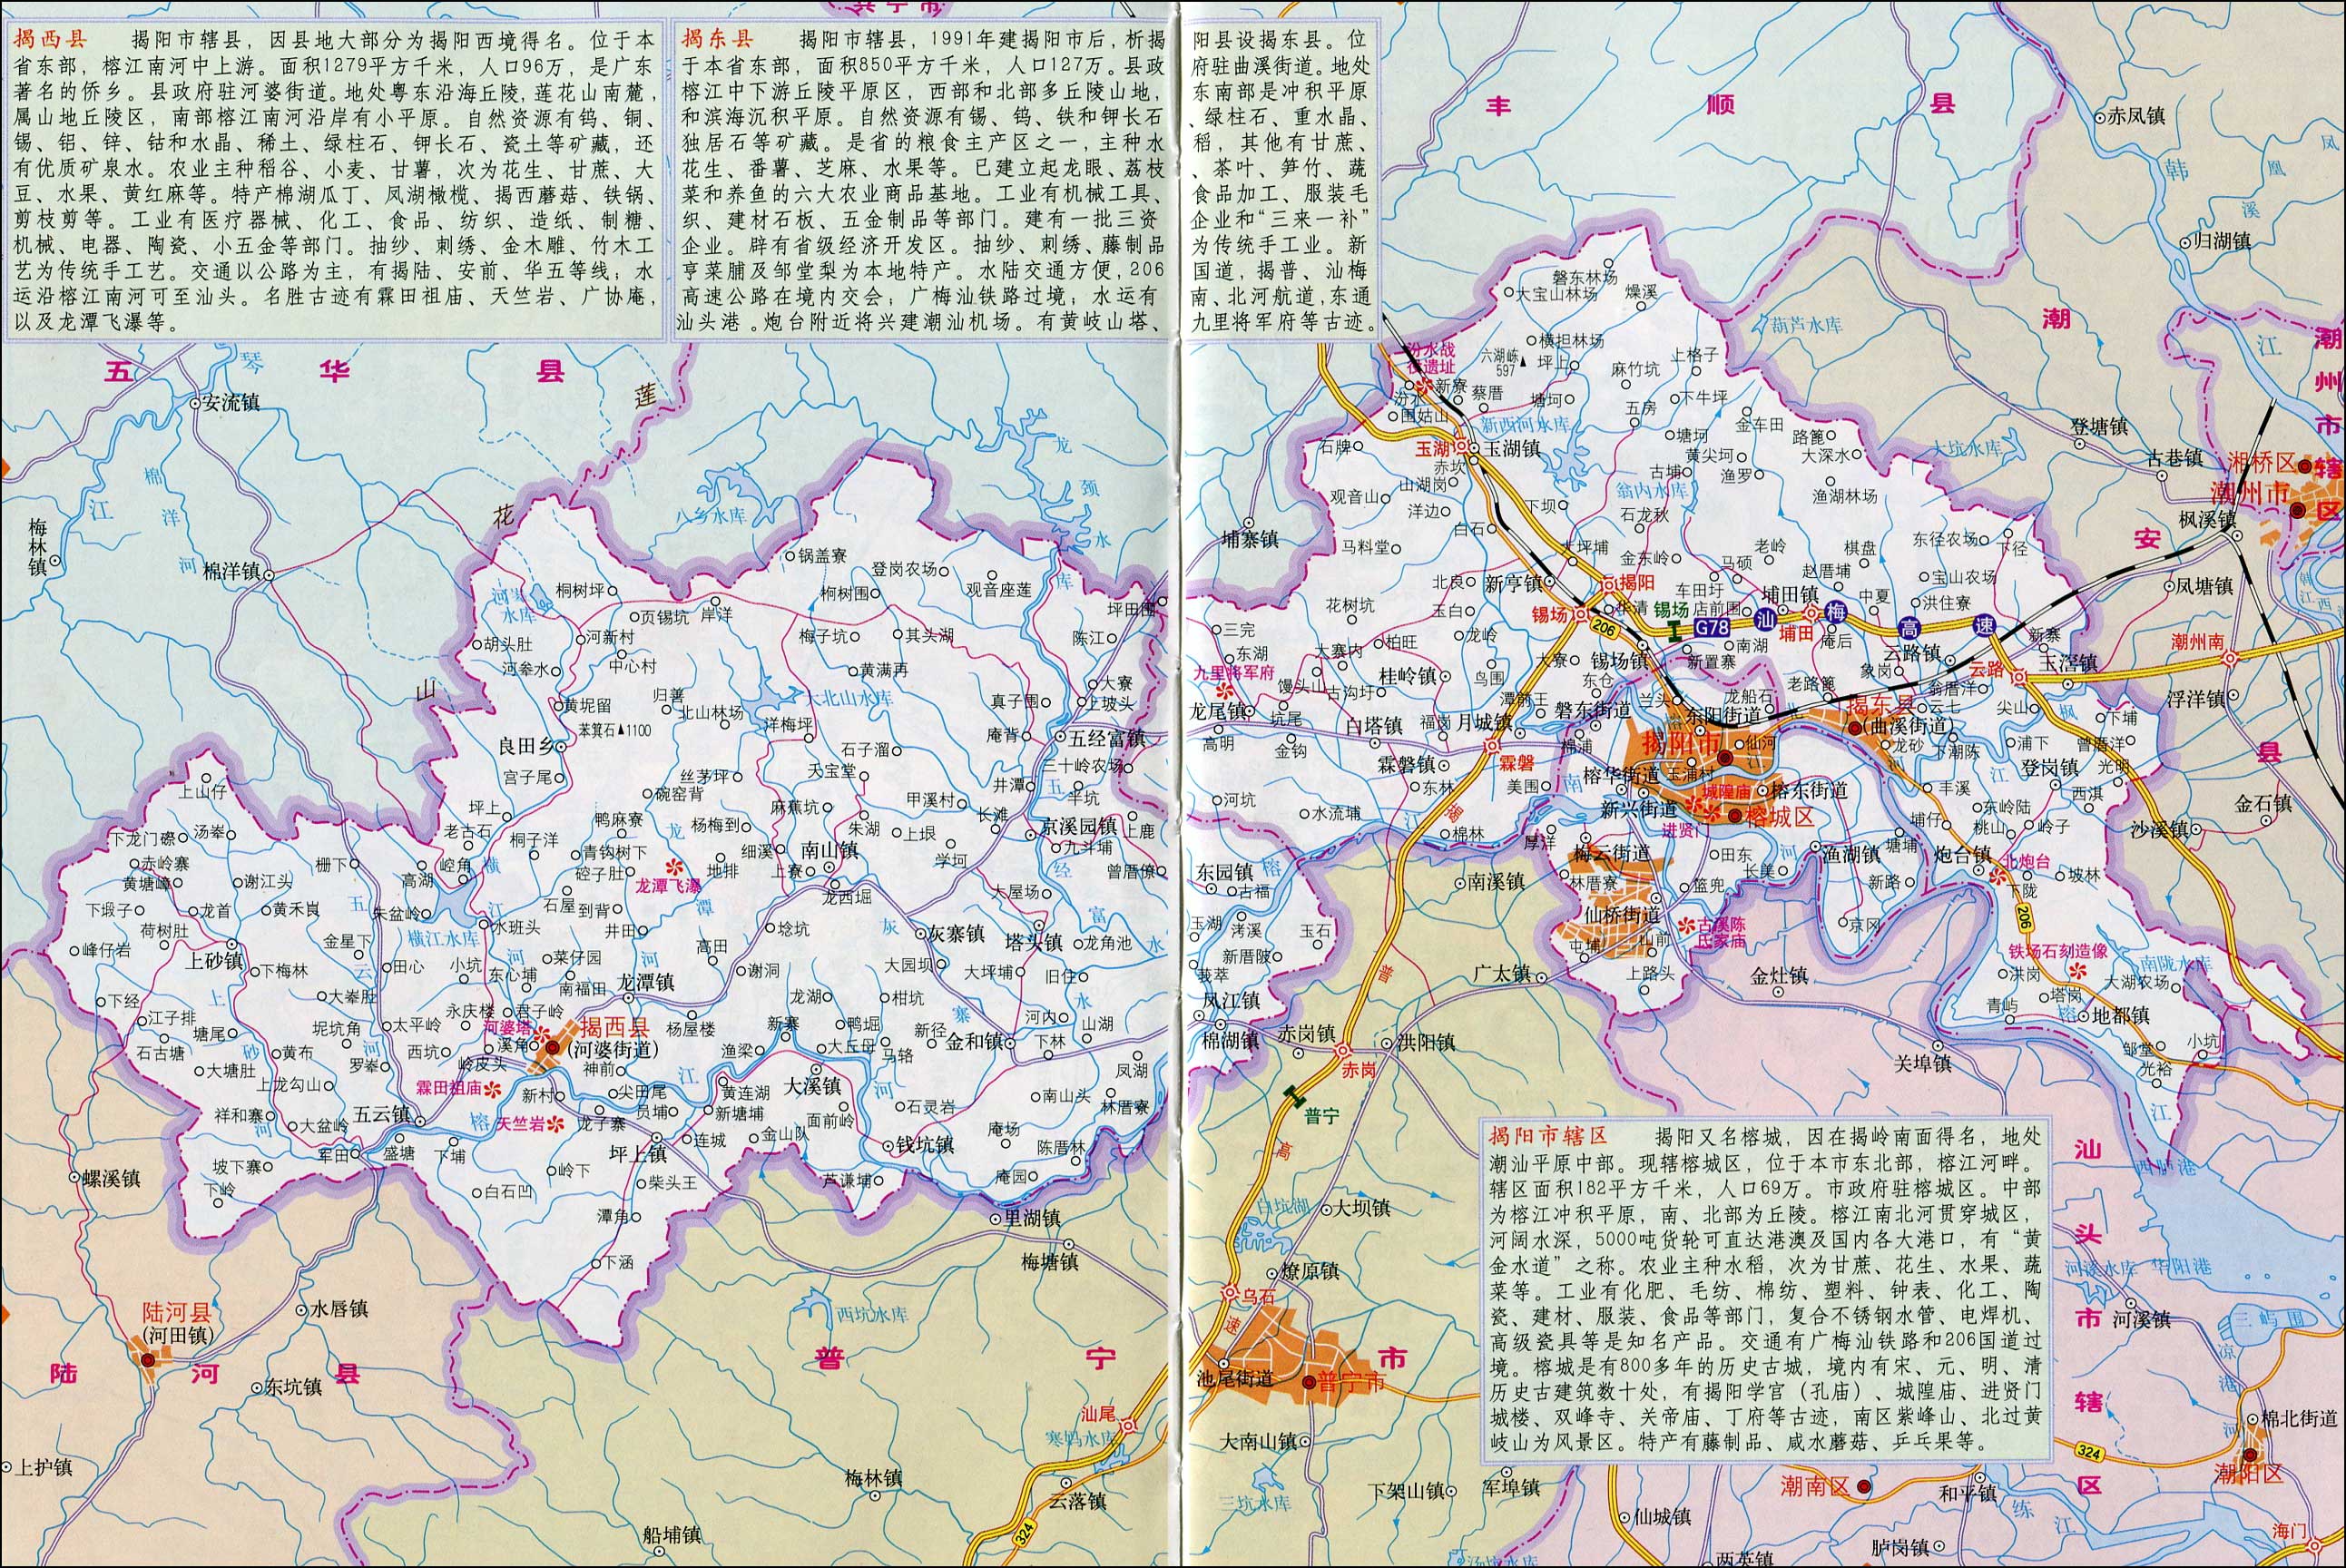 揭阳市辖区,掲西县,揭东县_揭阳市地图查询